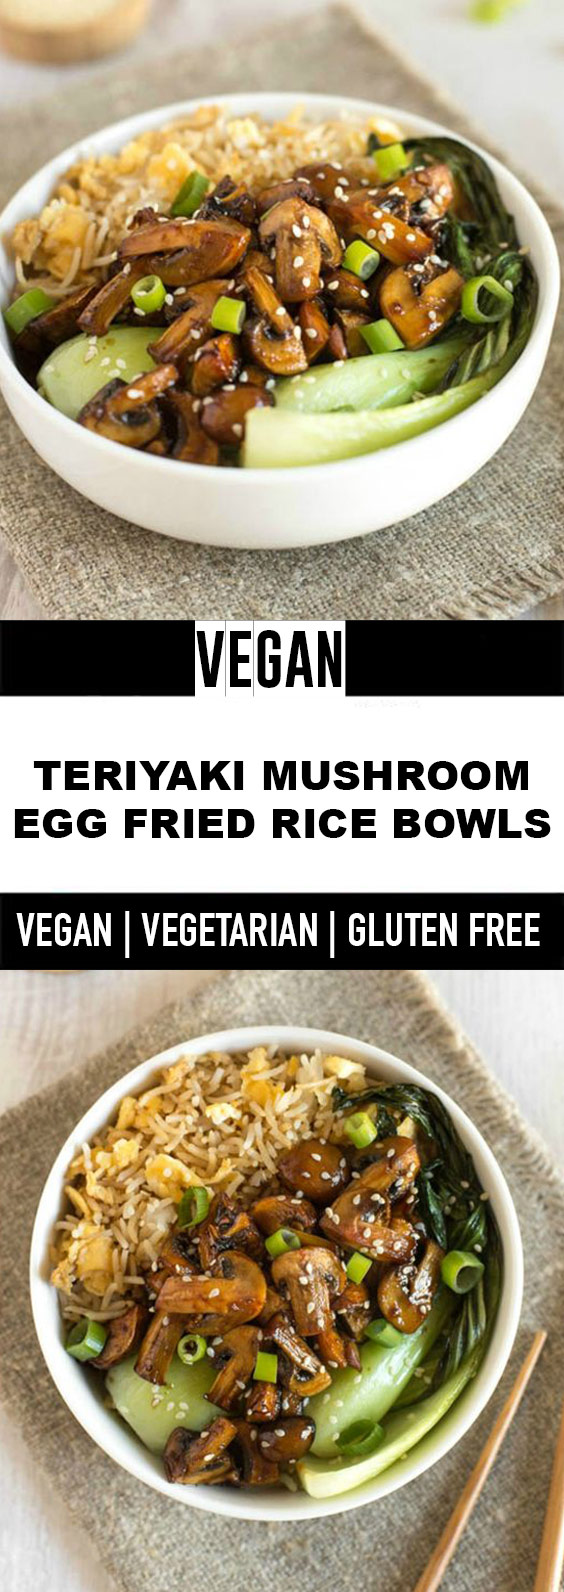 Teriyaki Mushroom Egg Fried Rice Bowls